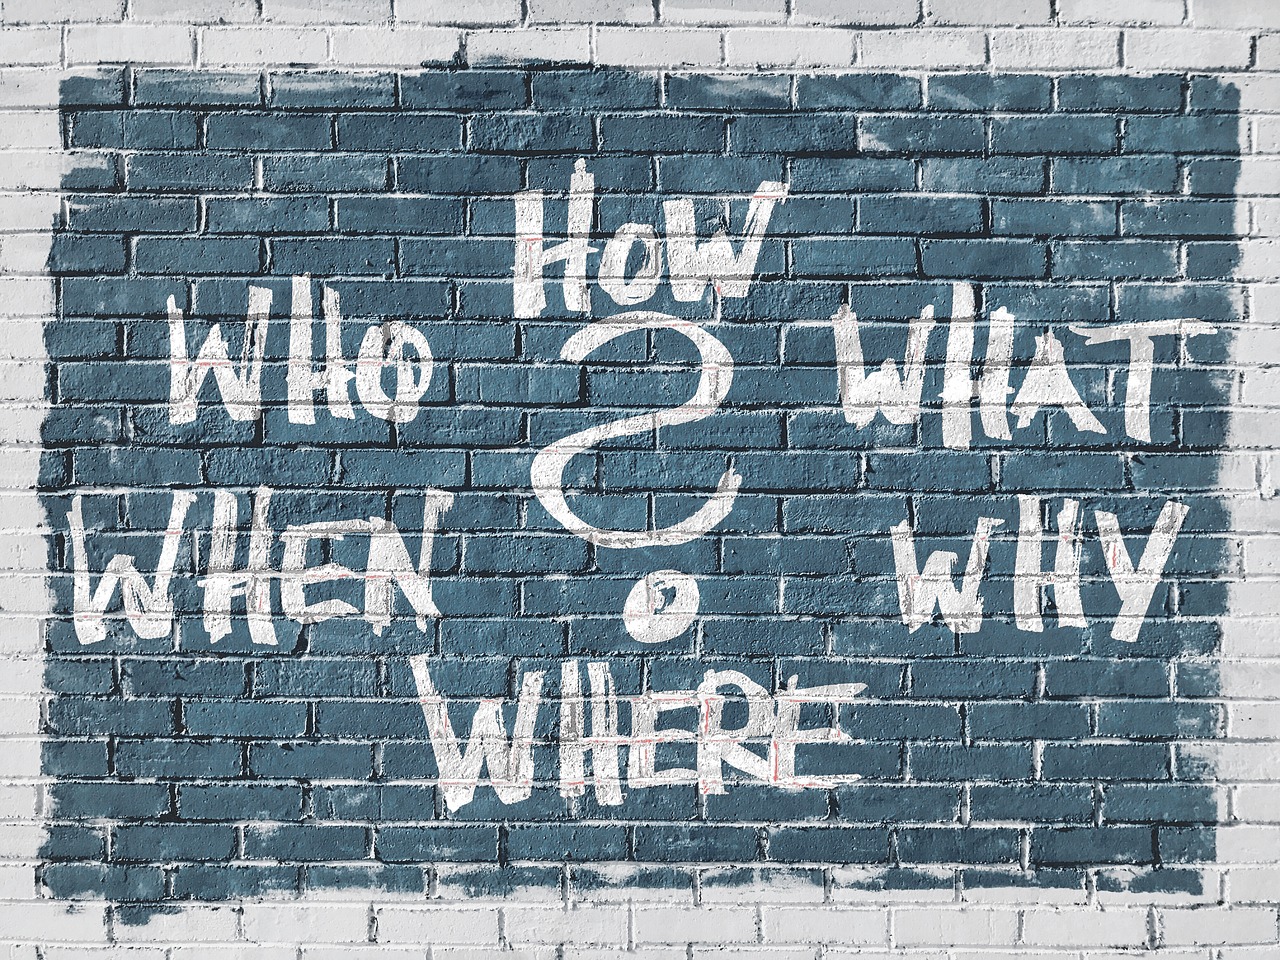 Les mots qui, comment, quoi, pourquoi, où et quand sont peints sur un mur de briques avec un point d'interrogation au centre.